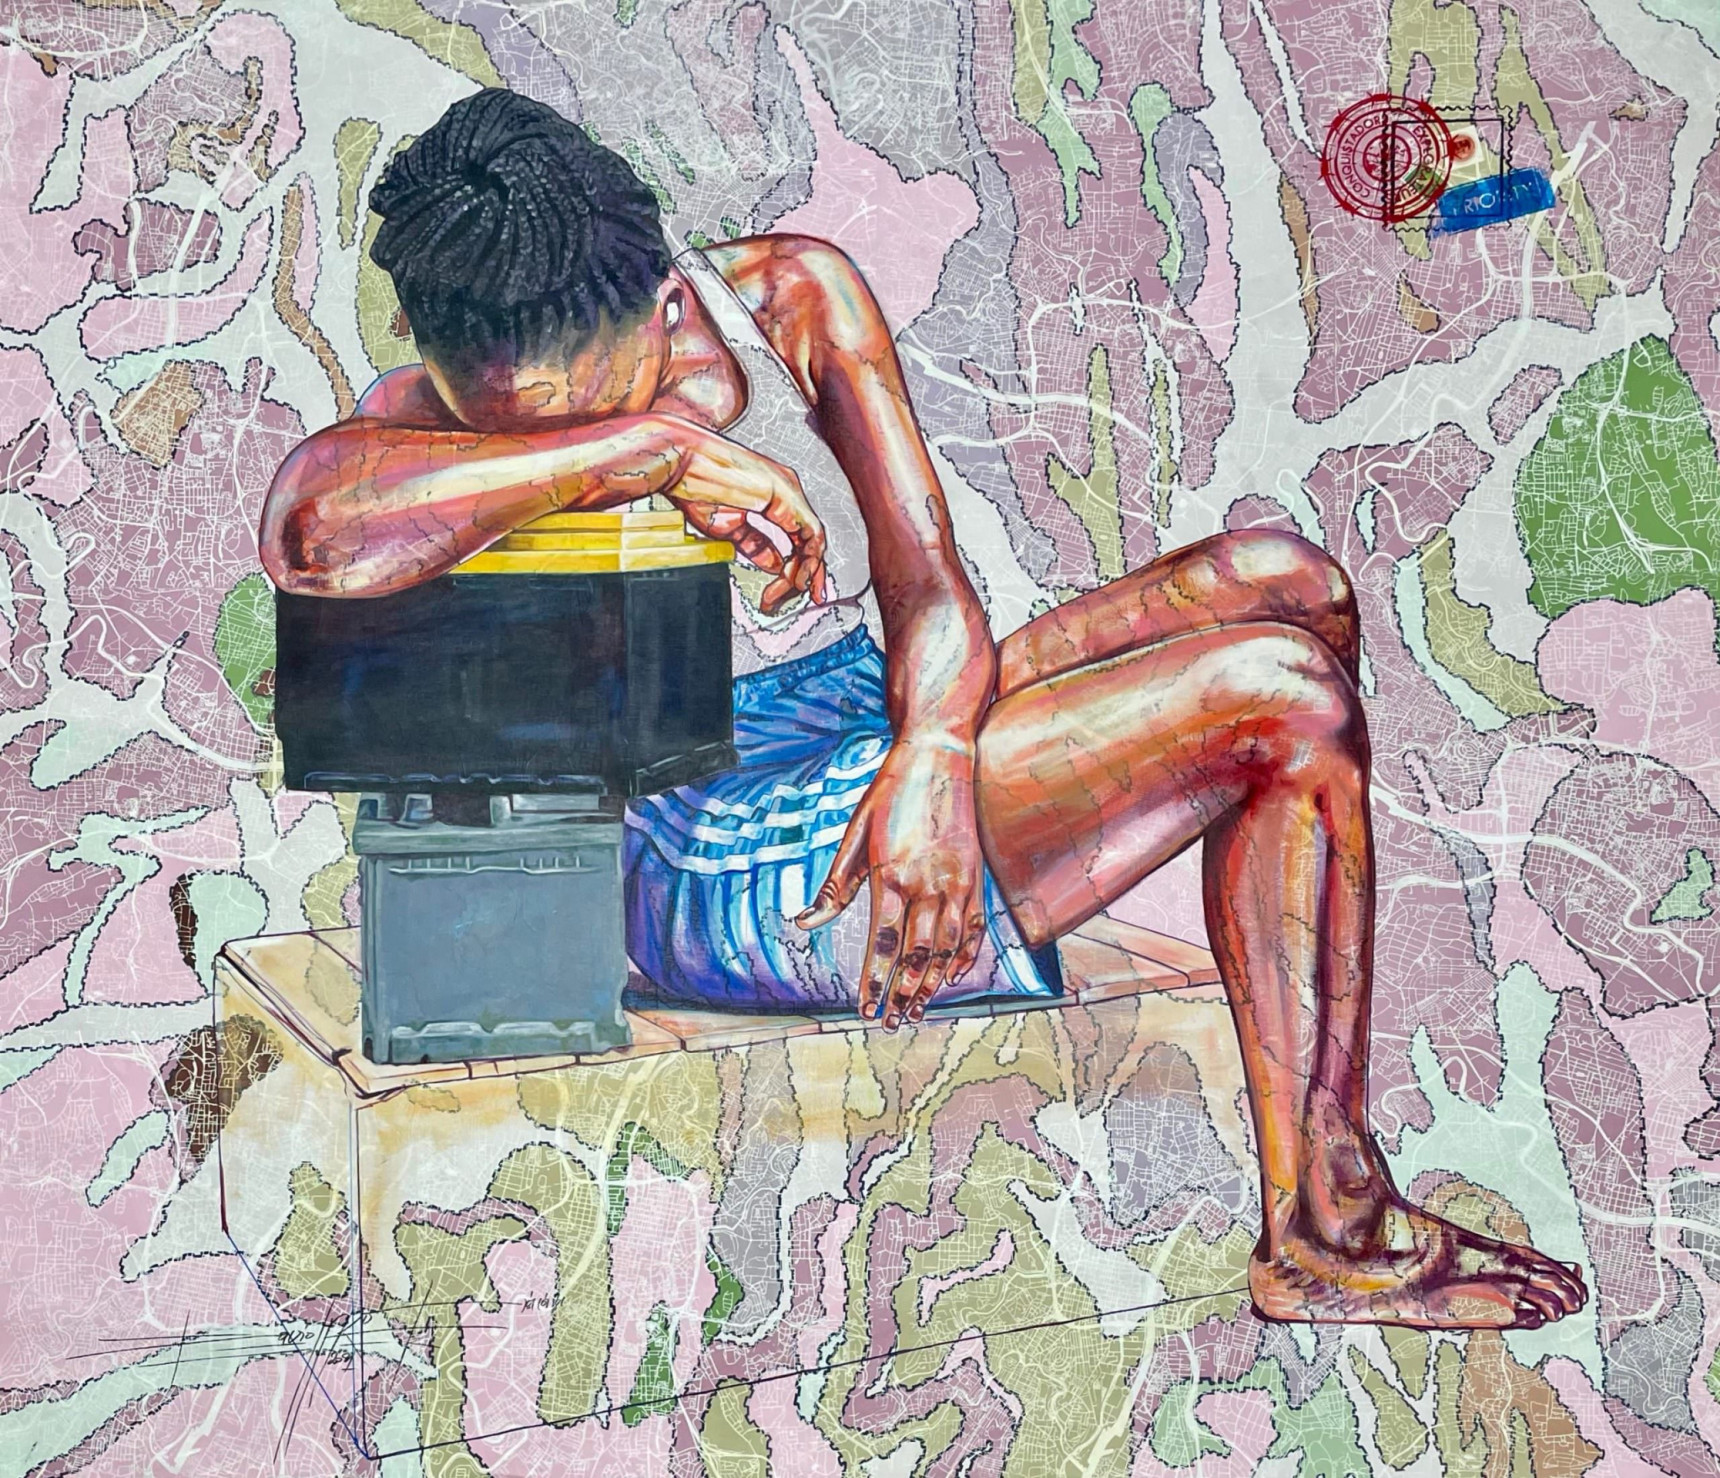 Jean David Nkot painting - girl crying